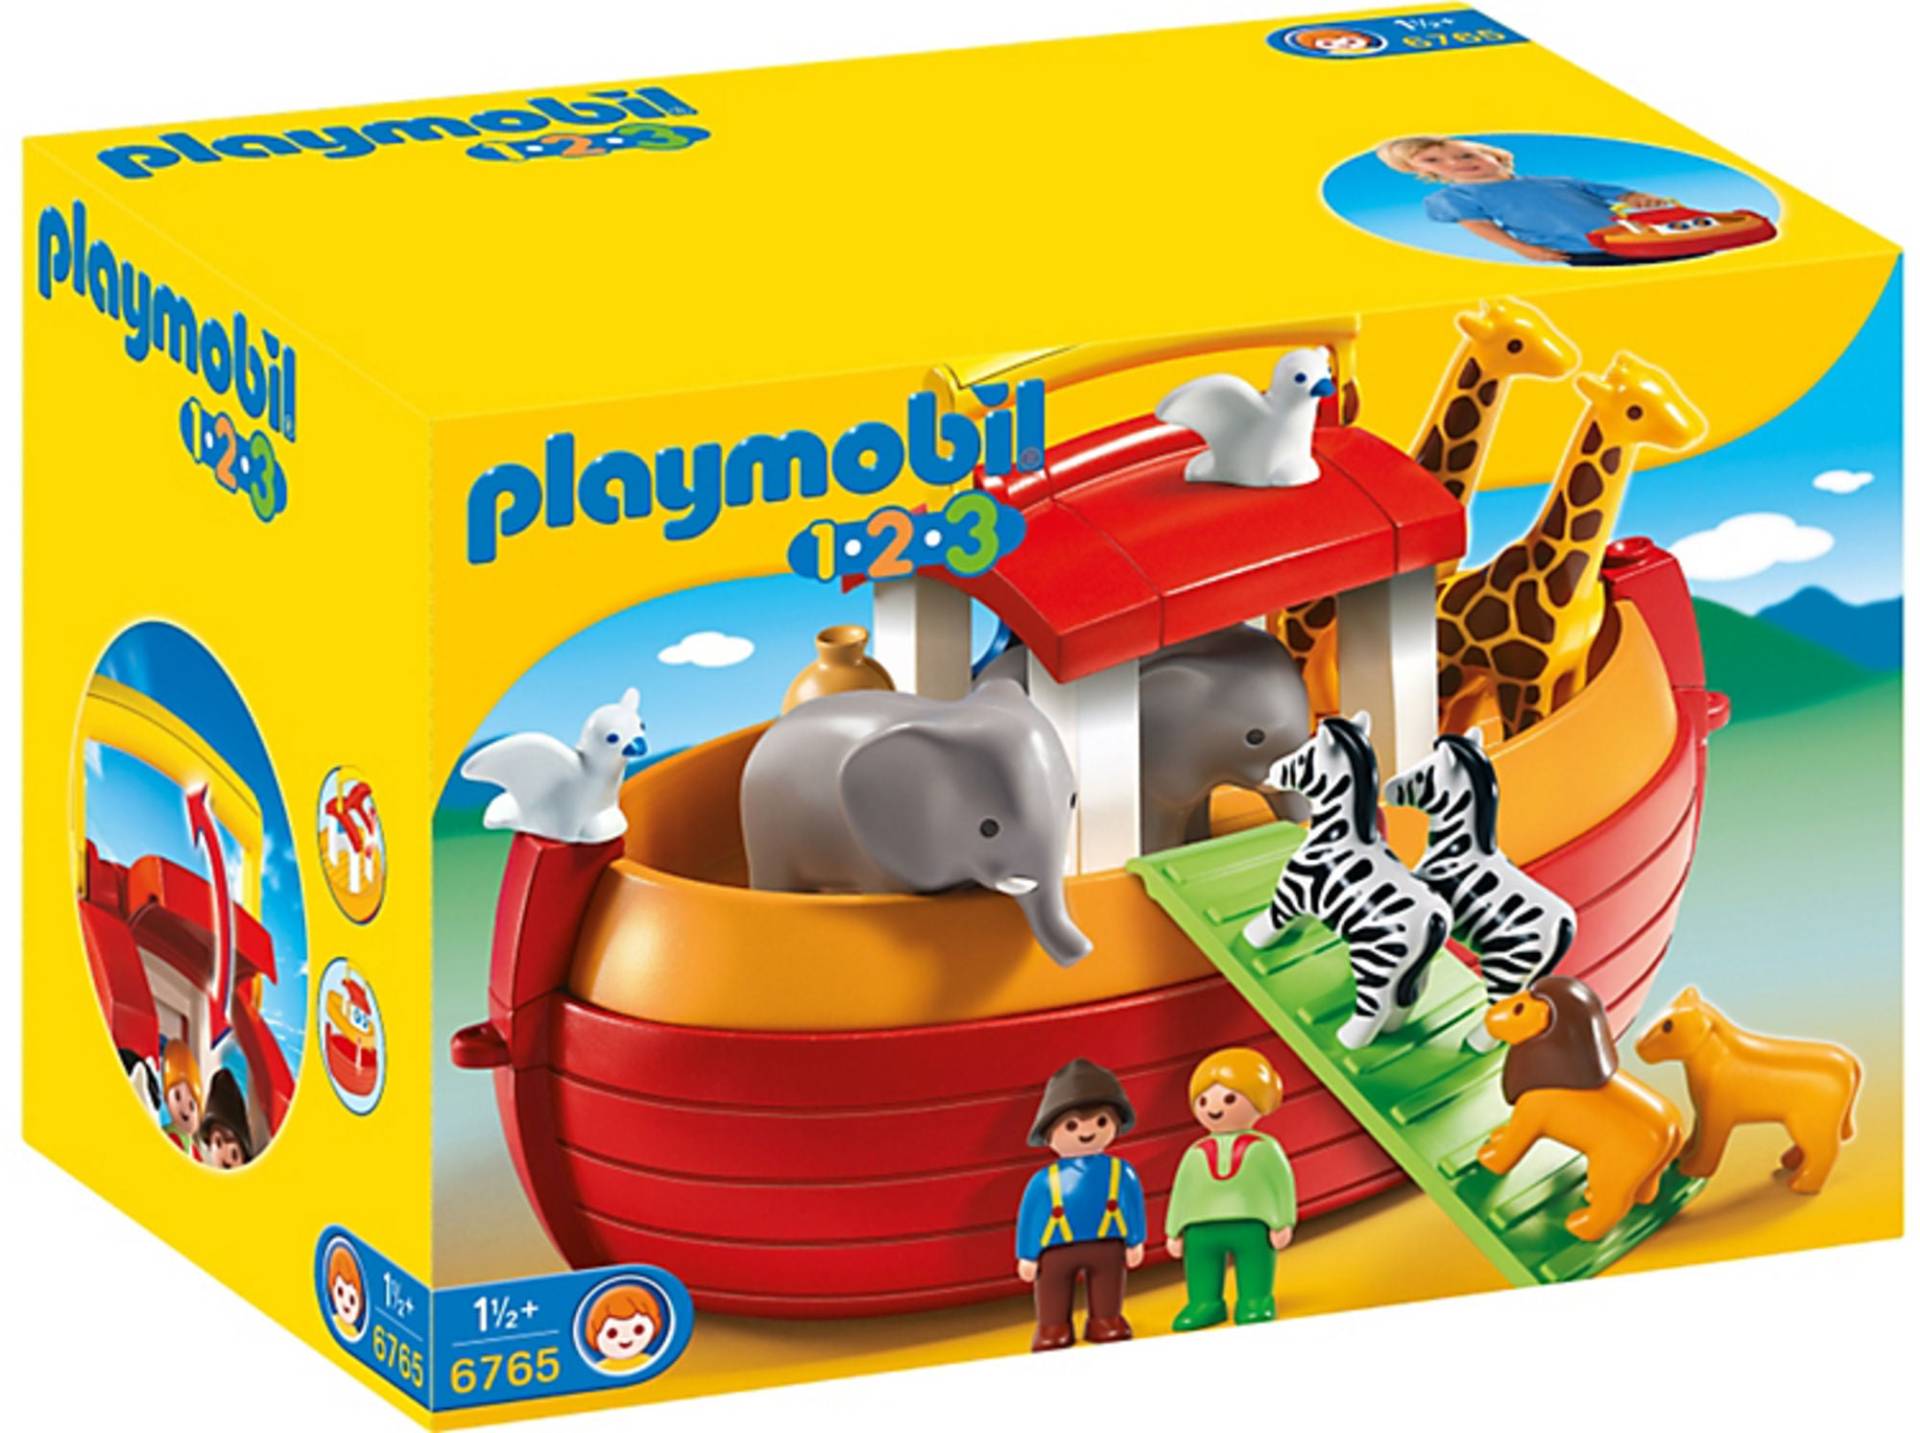 6765 Playmobil 123 Meine Mitnehm- Arche Noah von Playmobil